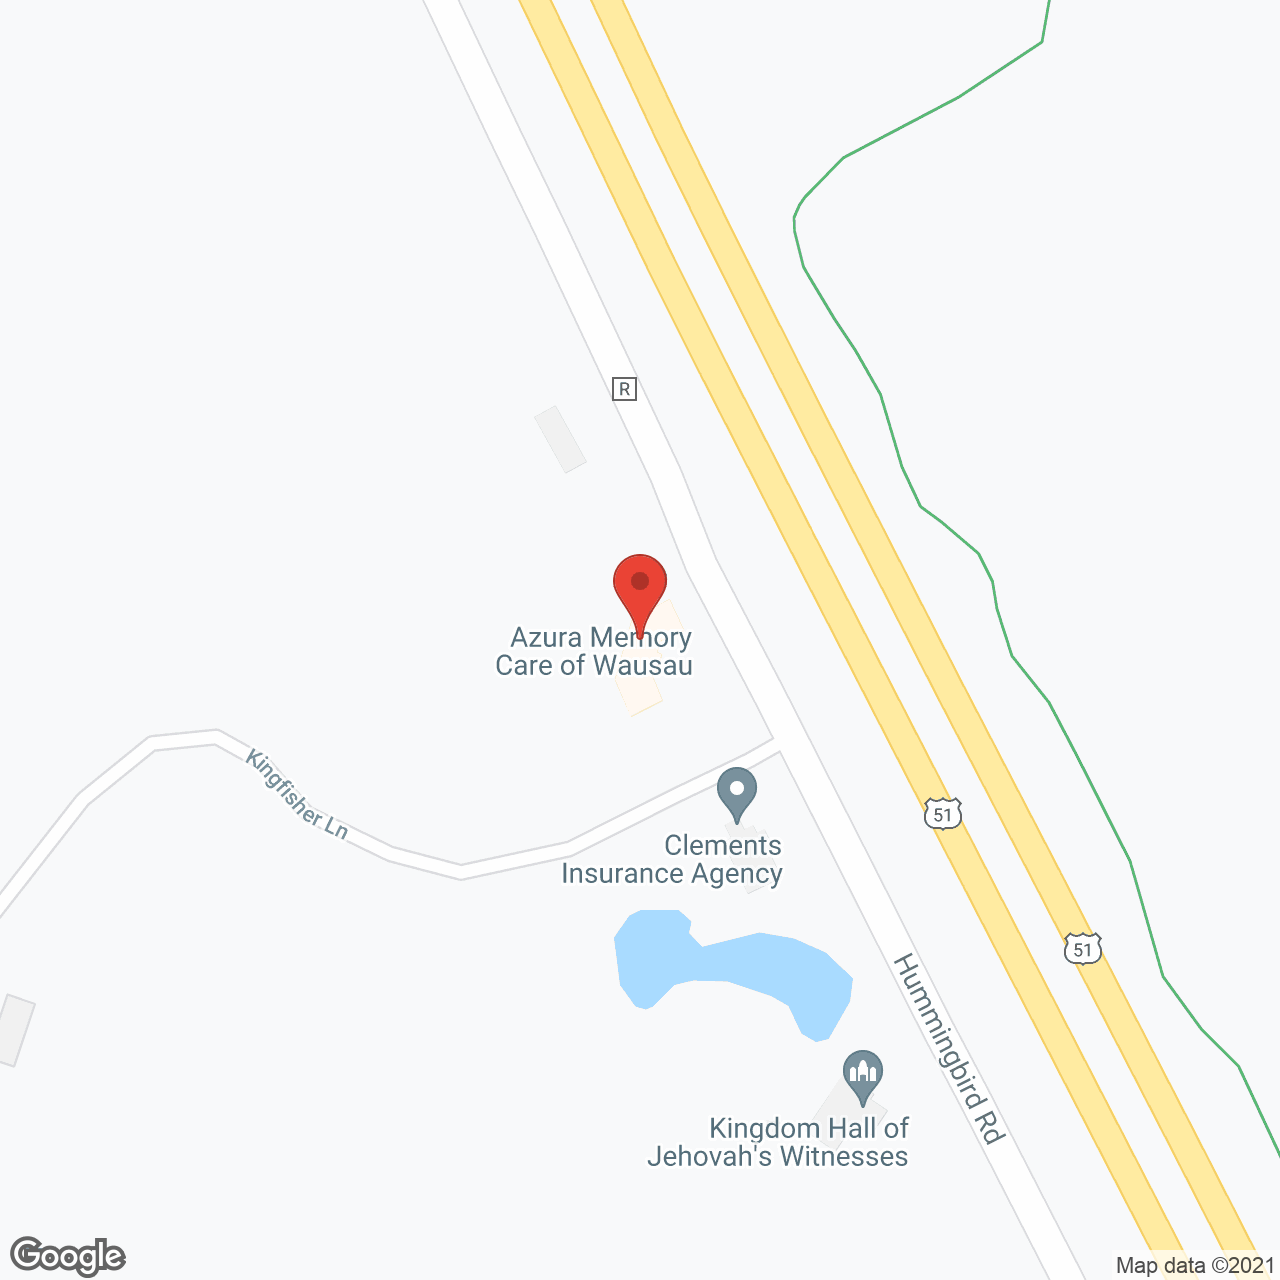 Azura Memory Care of Wausau in google map